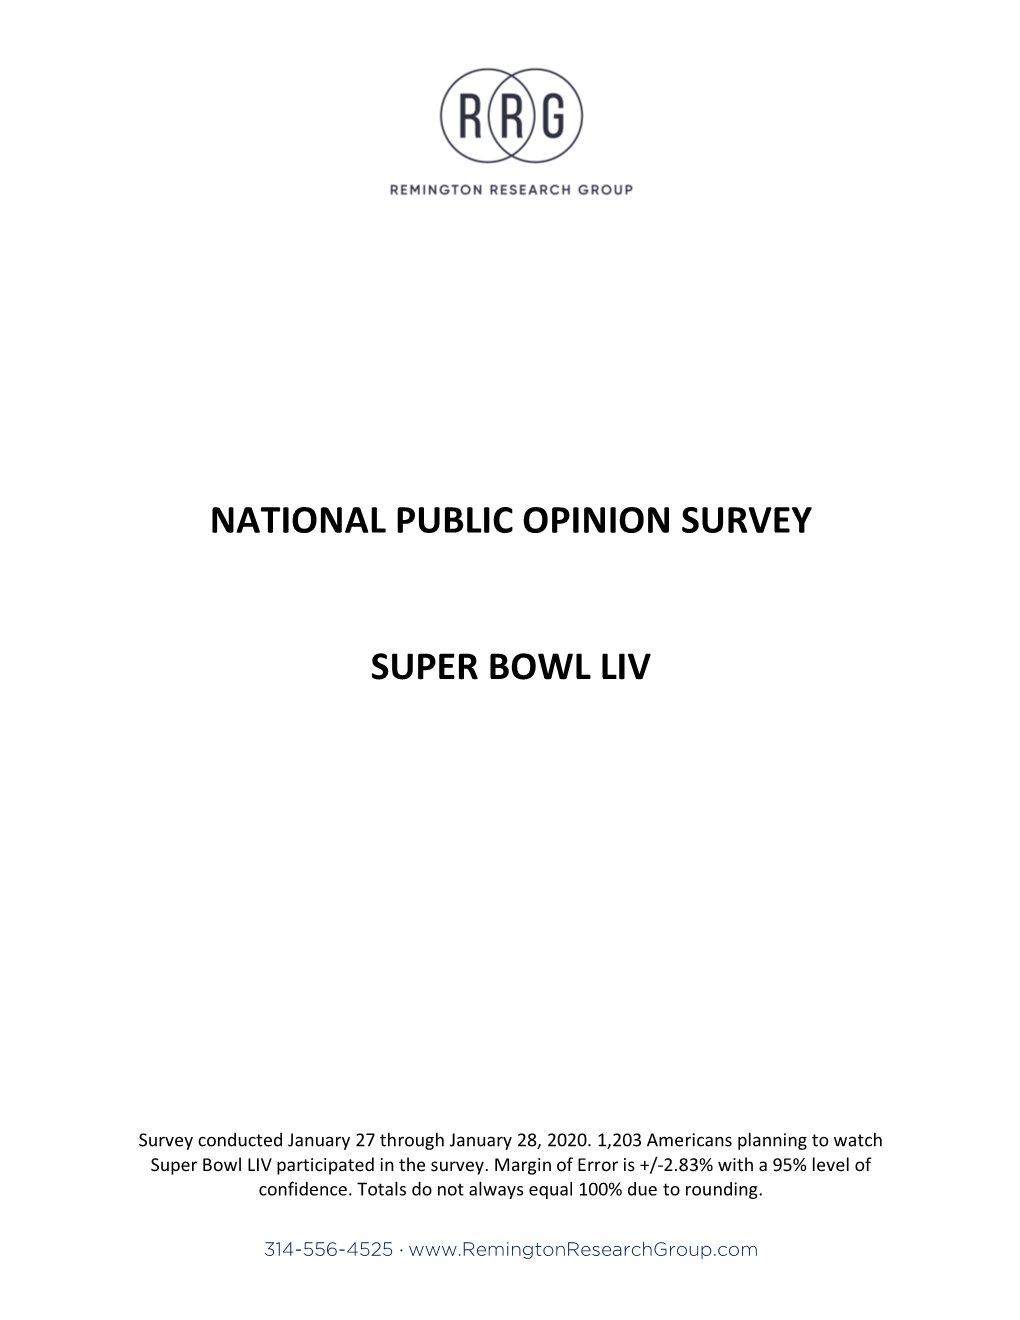 National Super Bowl Liv Public Opinion Survey 012920